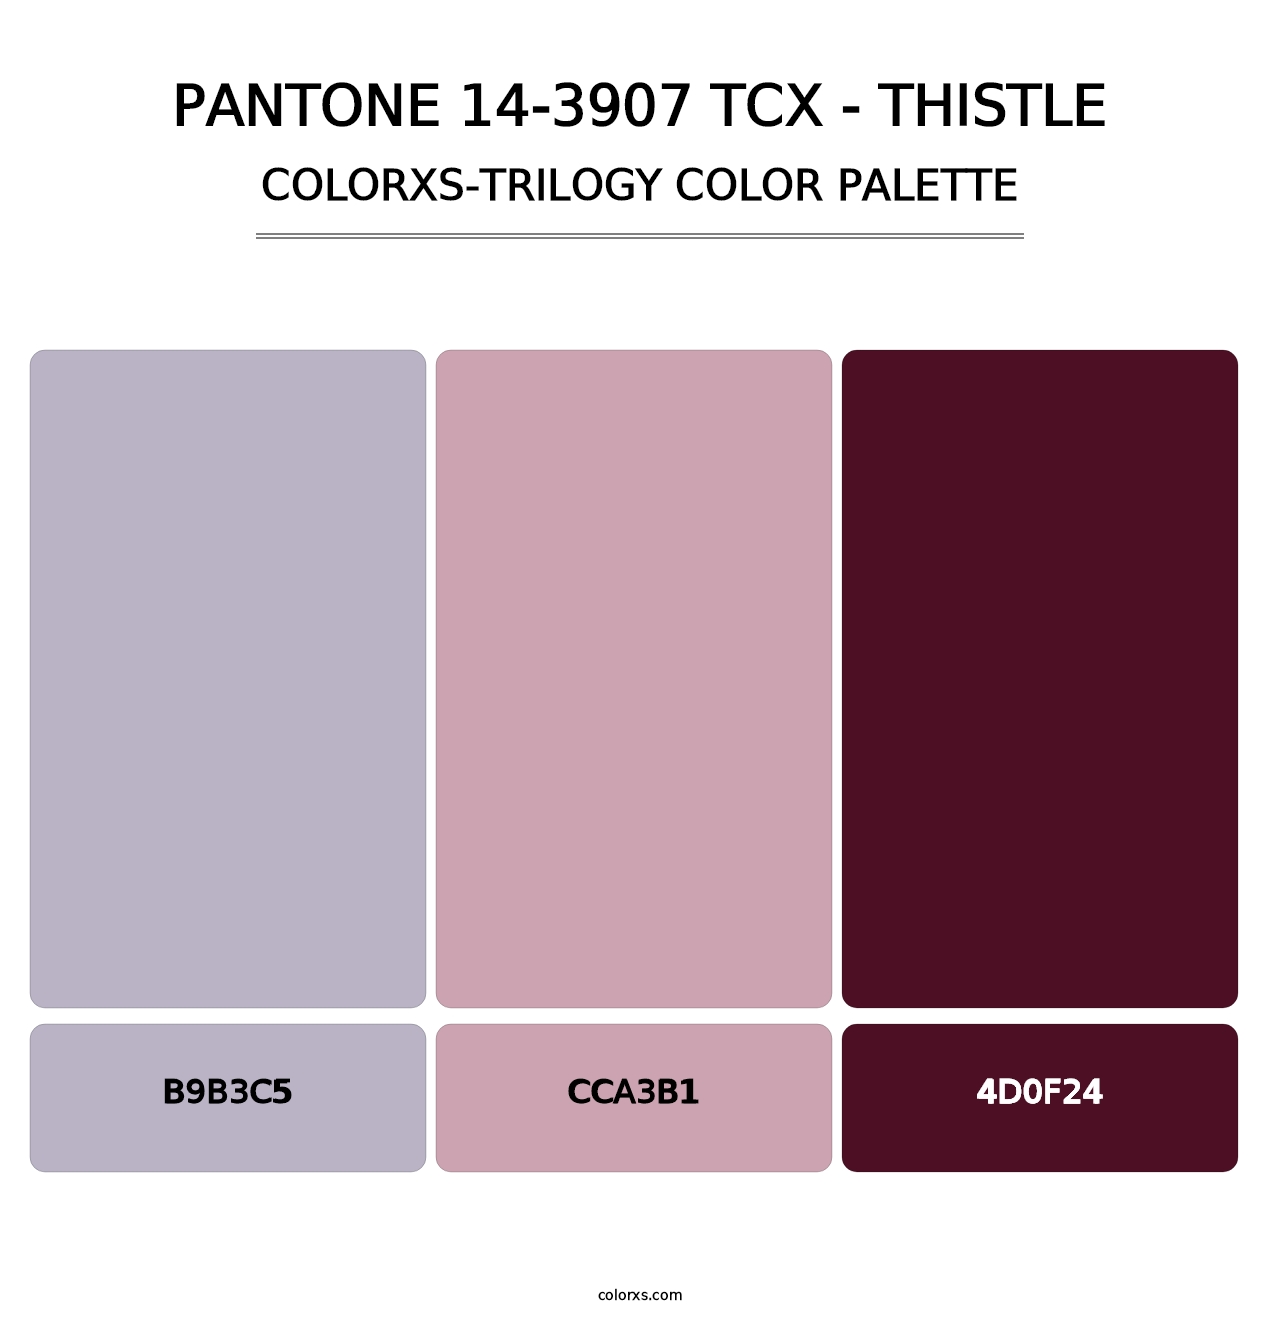 PANTONE 14-3907 TCX - Thistle - Colorxs Trilogy Palette